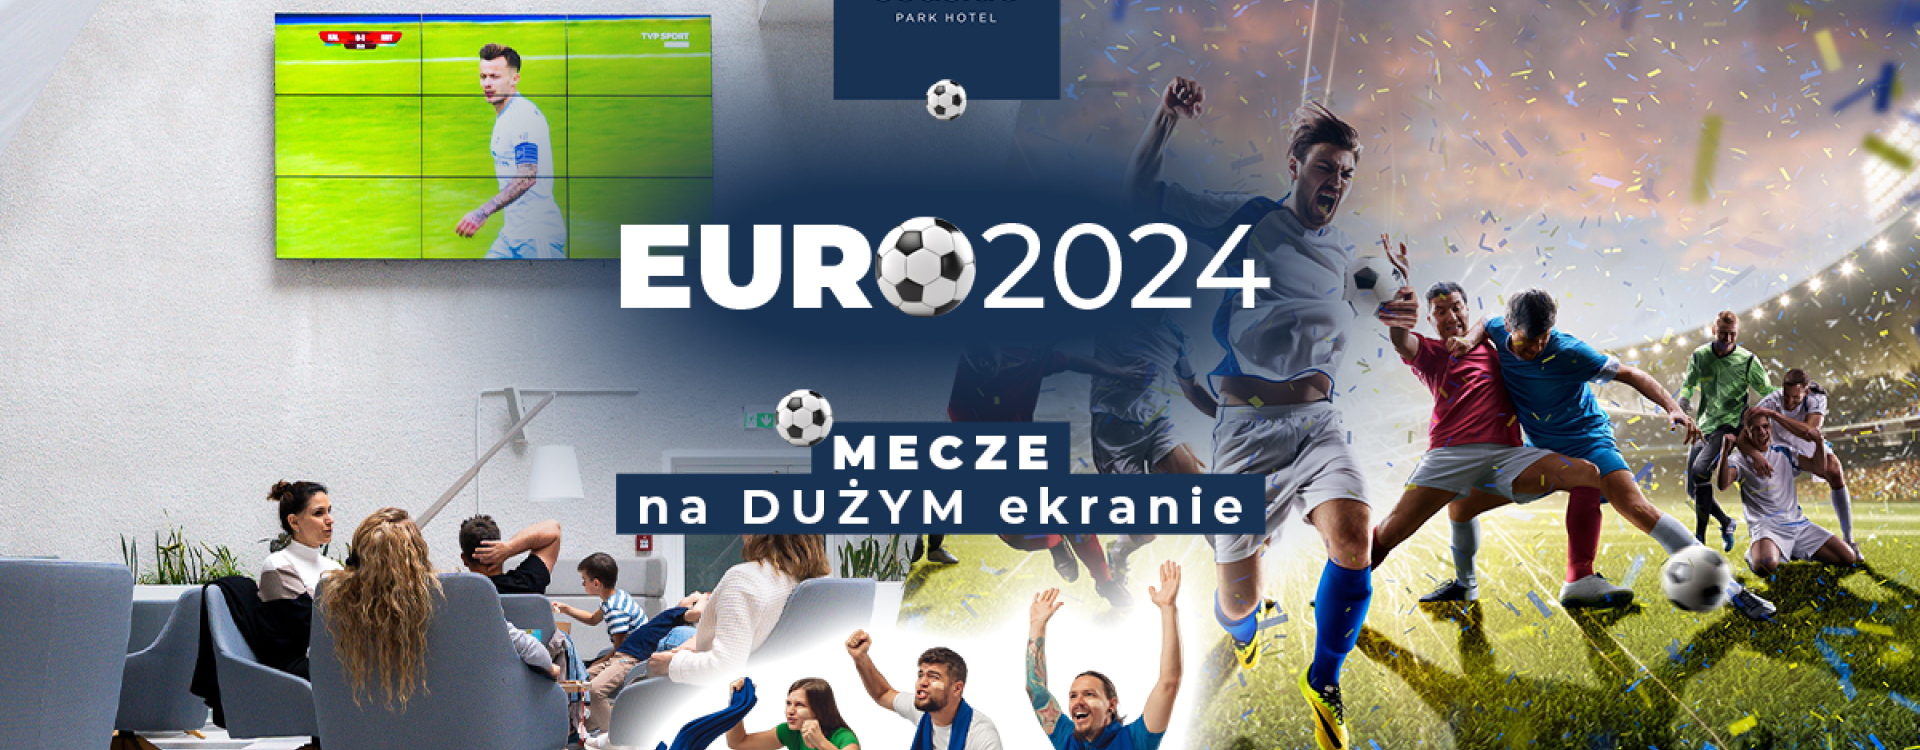 EURO 2024-Spiele auf der großen Leinwand